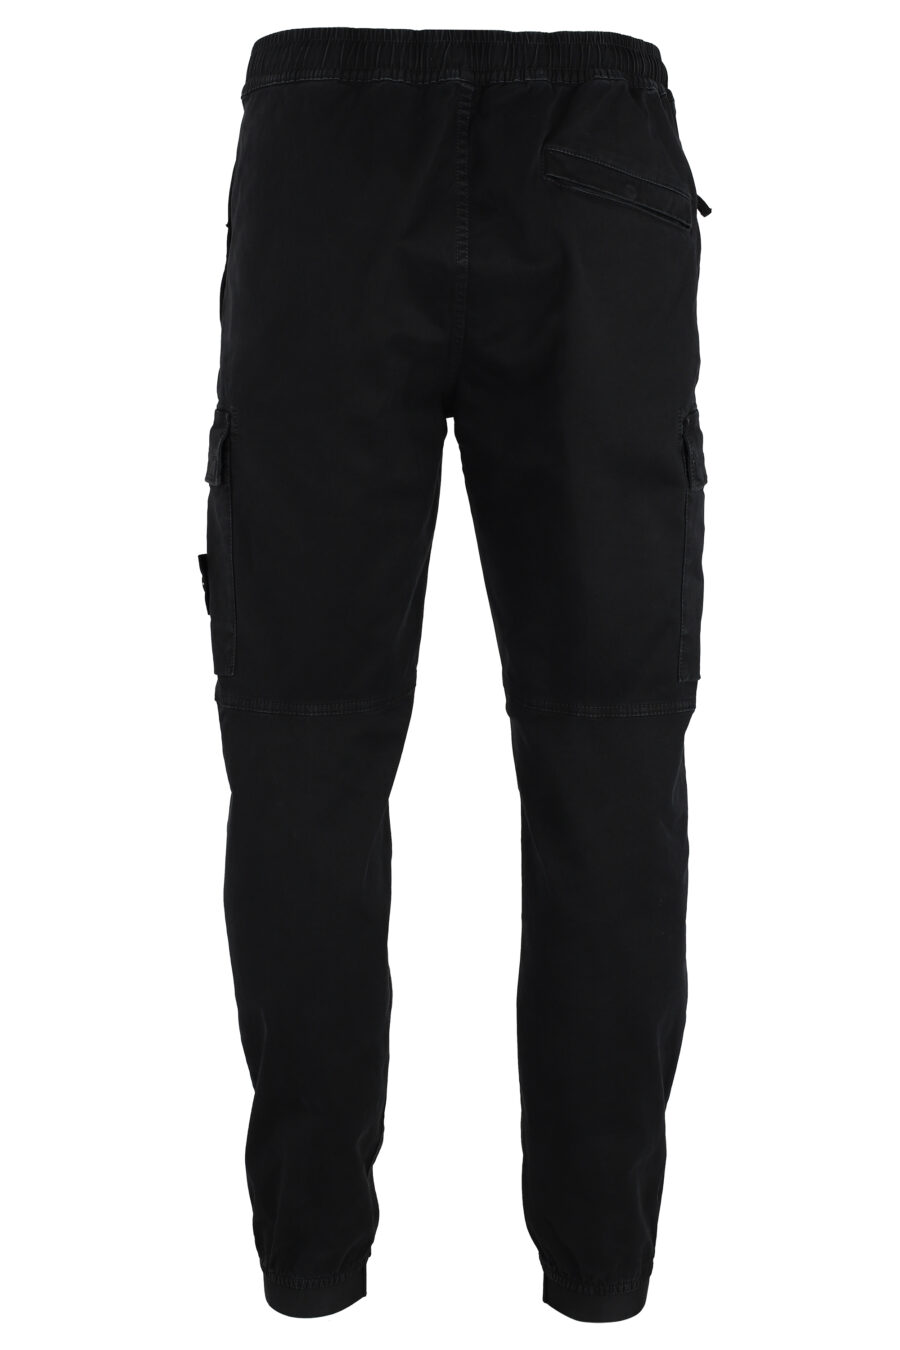 Pantalón negro estilo cargo con parche lateral - IMG 4801